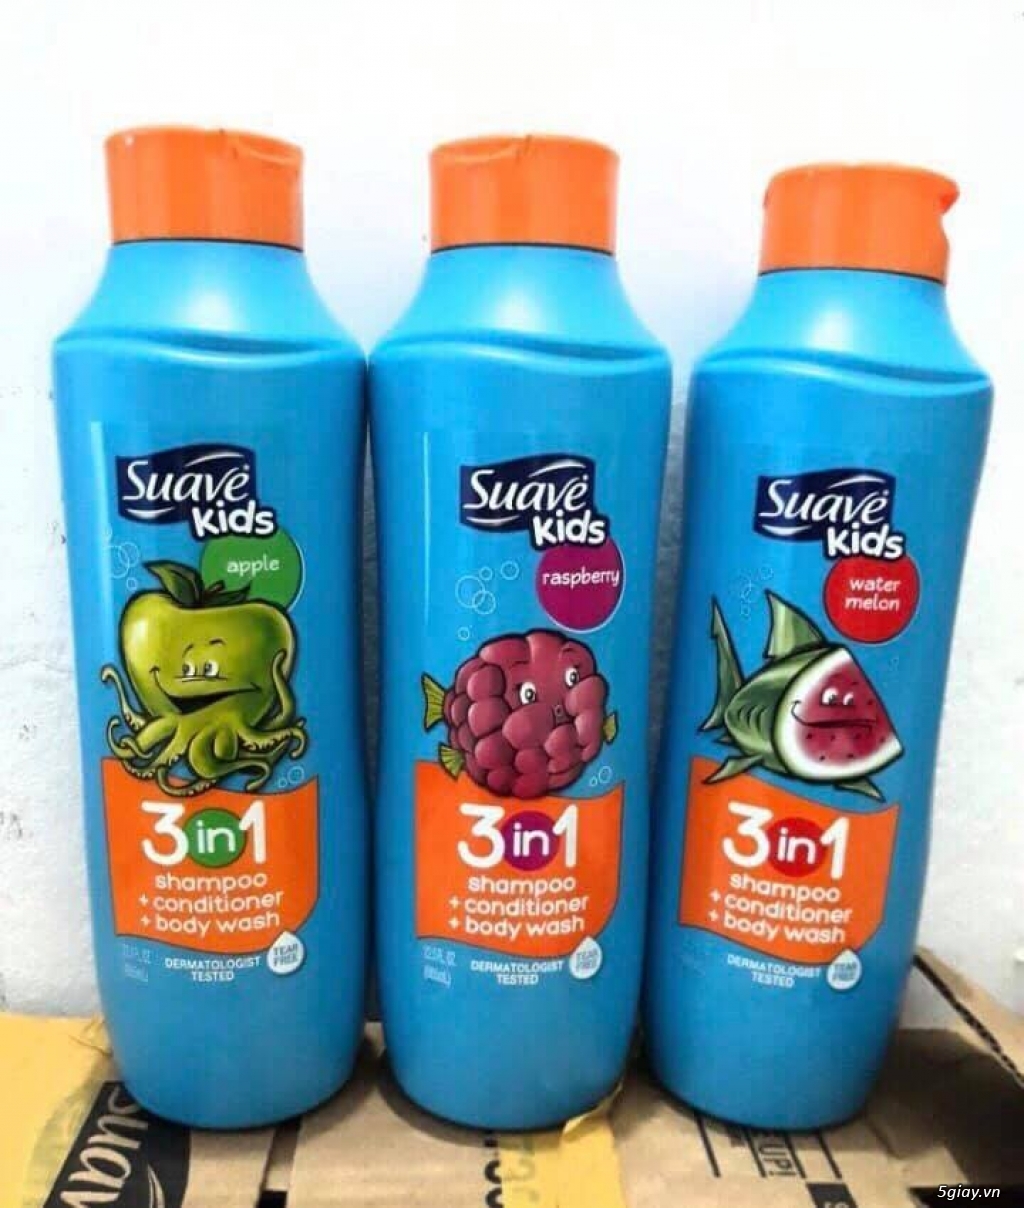 Suave for KID - Dầu gội kết hợp dầu xả và sữa tắm 3in1 dành cho trẻ em - 1